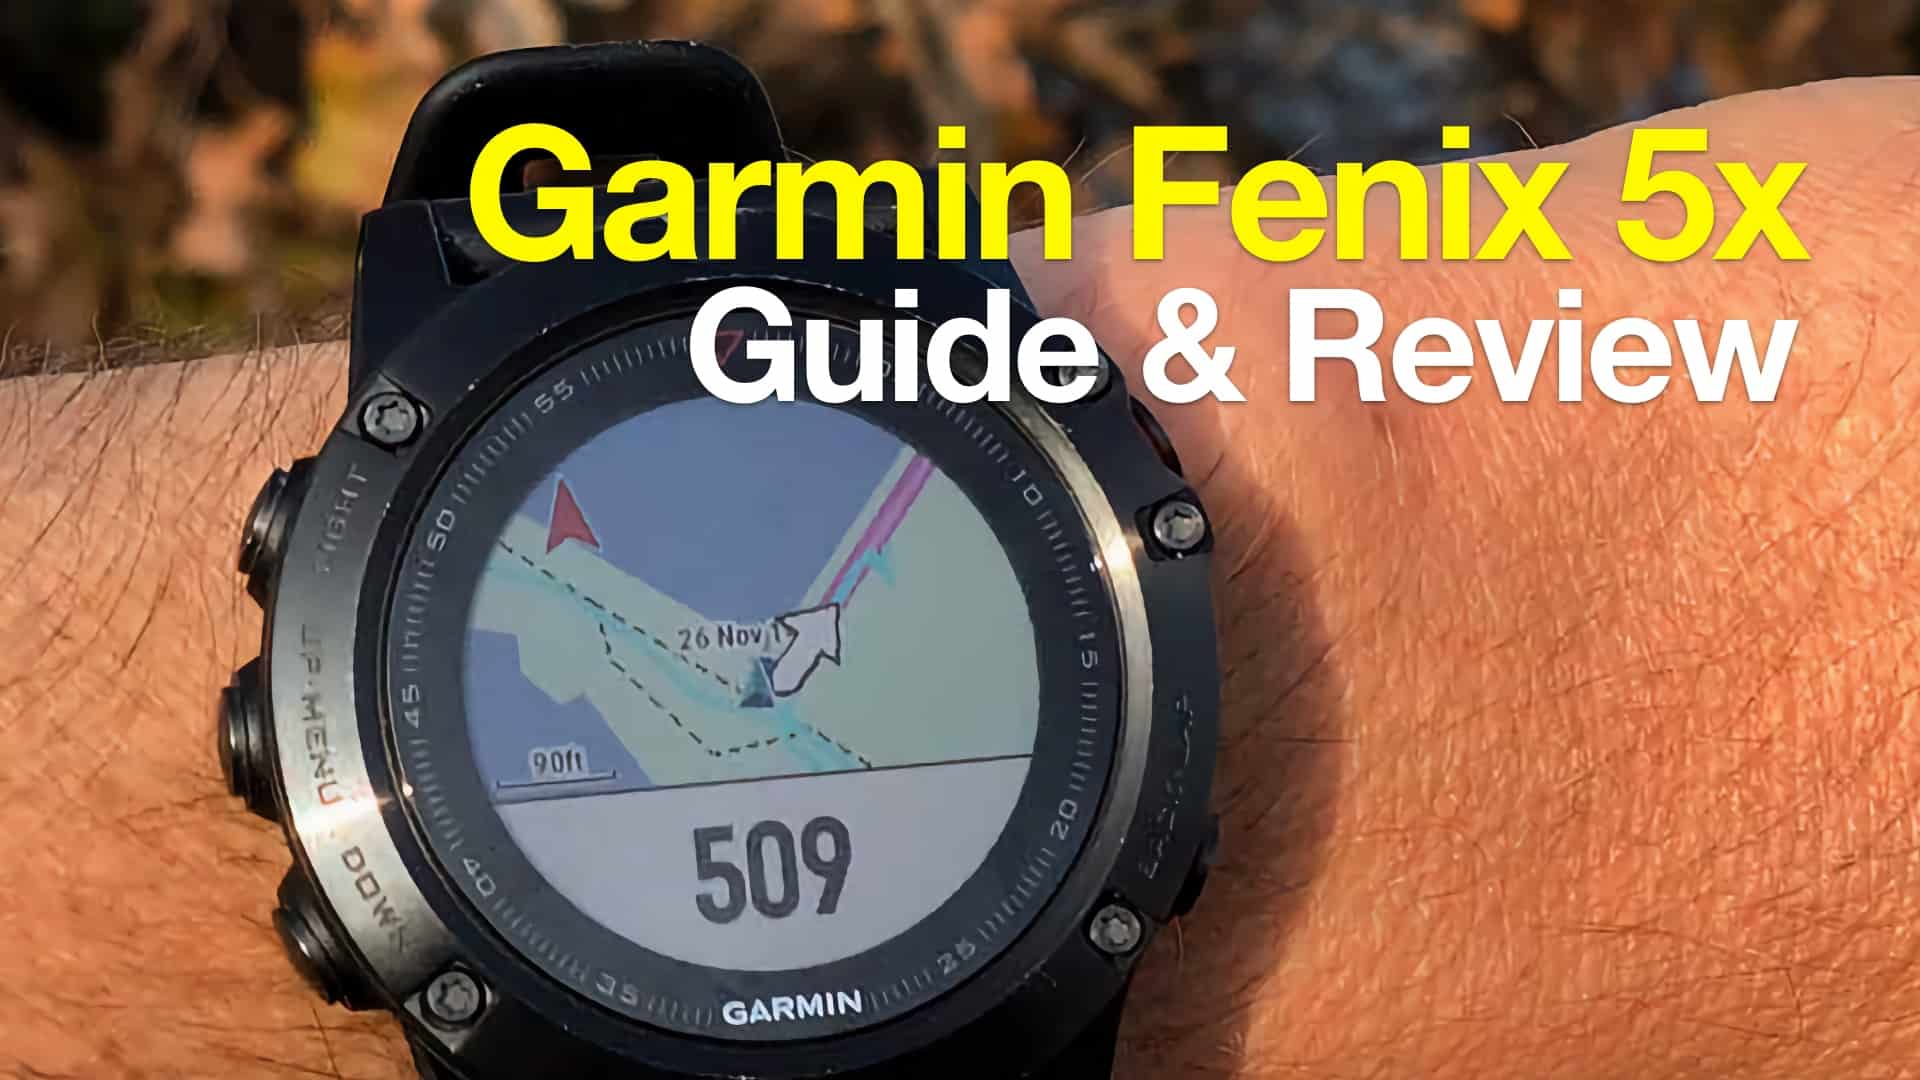 Garmin 5x Hiking Review & Guide - HikingGuy.com